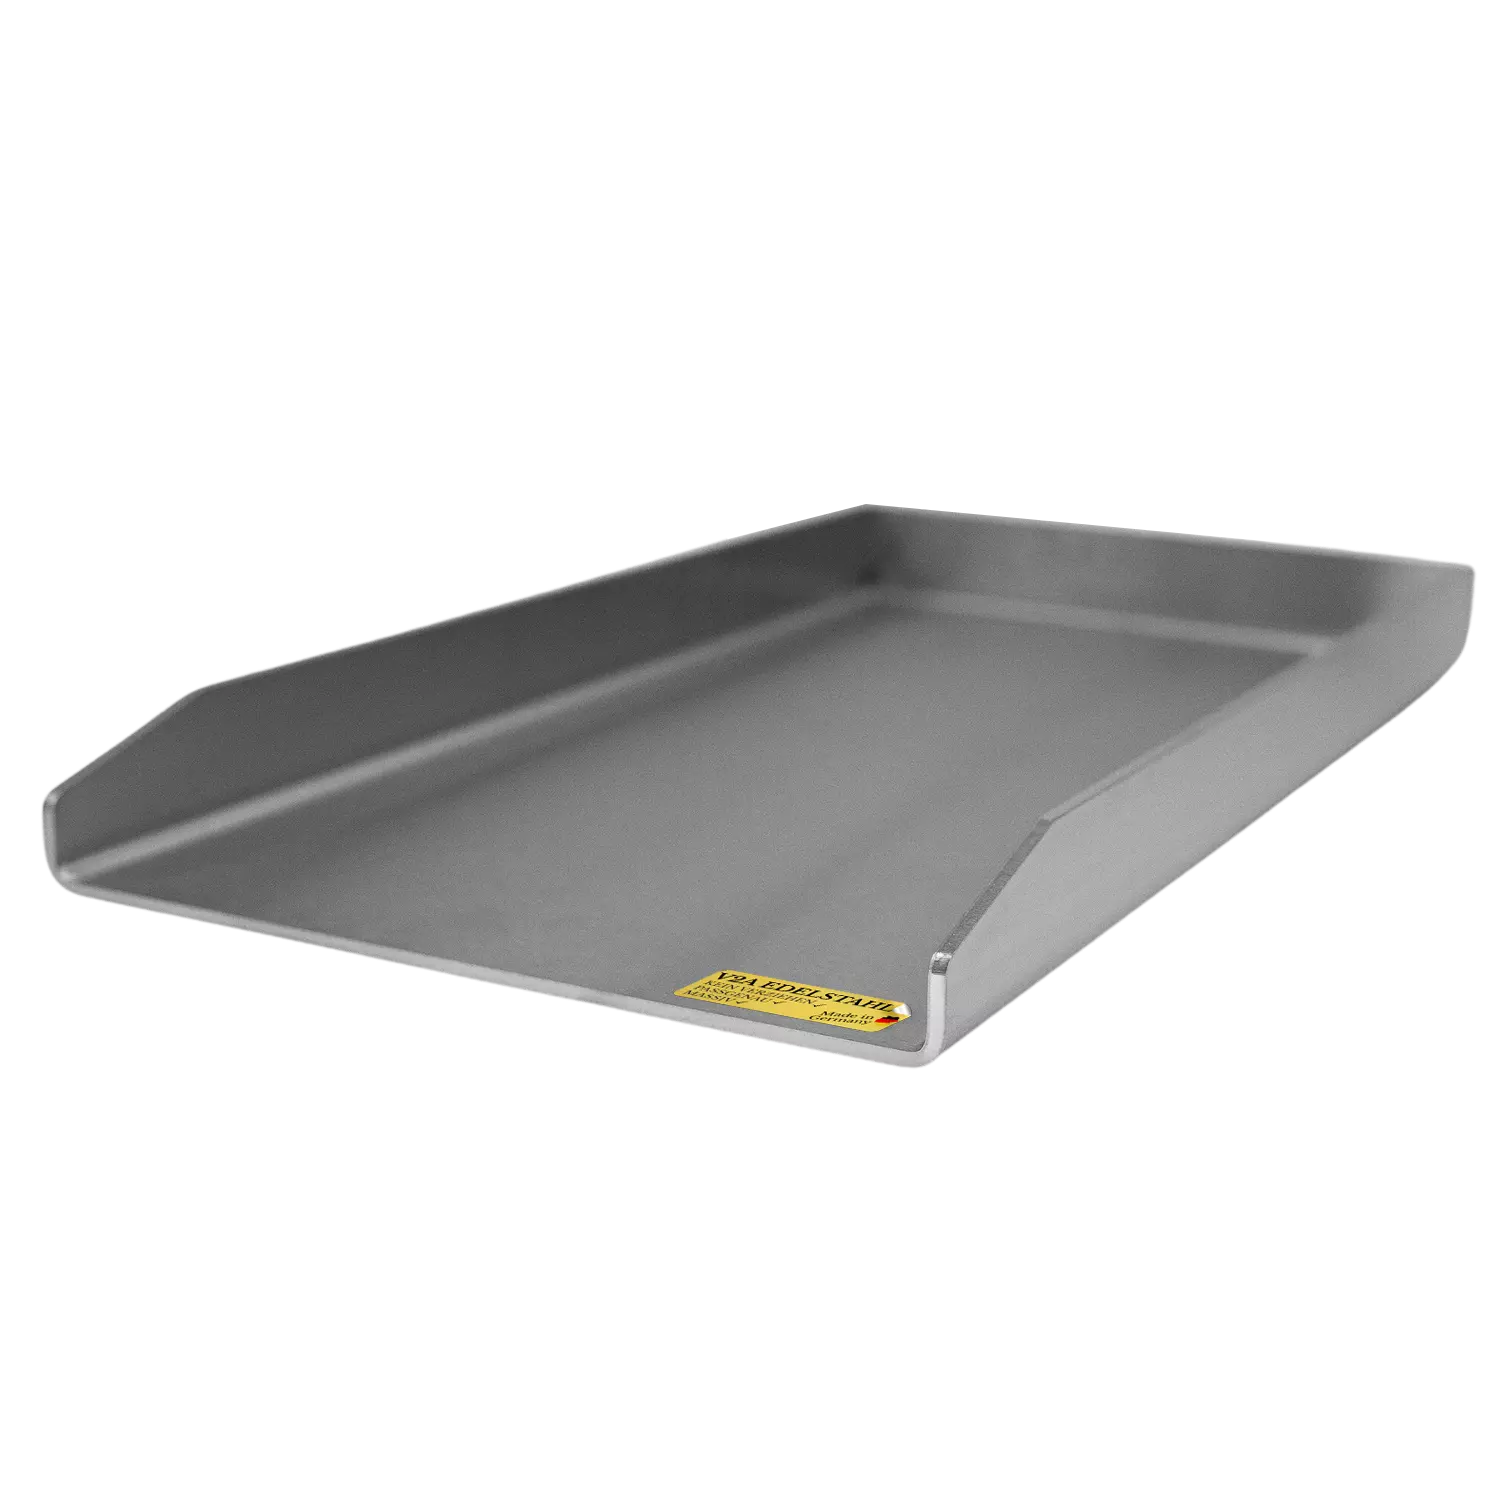 Plancha | Grillplatte | Edelstahl V2A | Burnhard Fred | 23,5x41,5cm